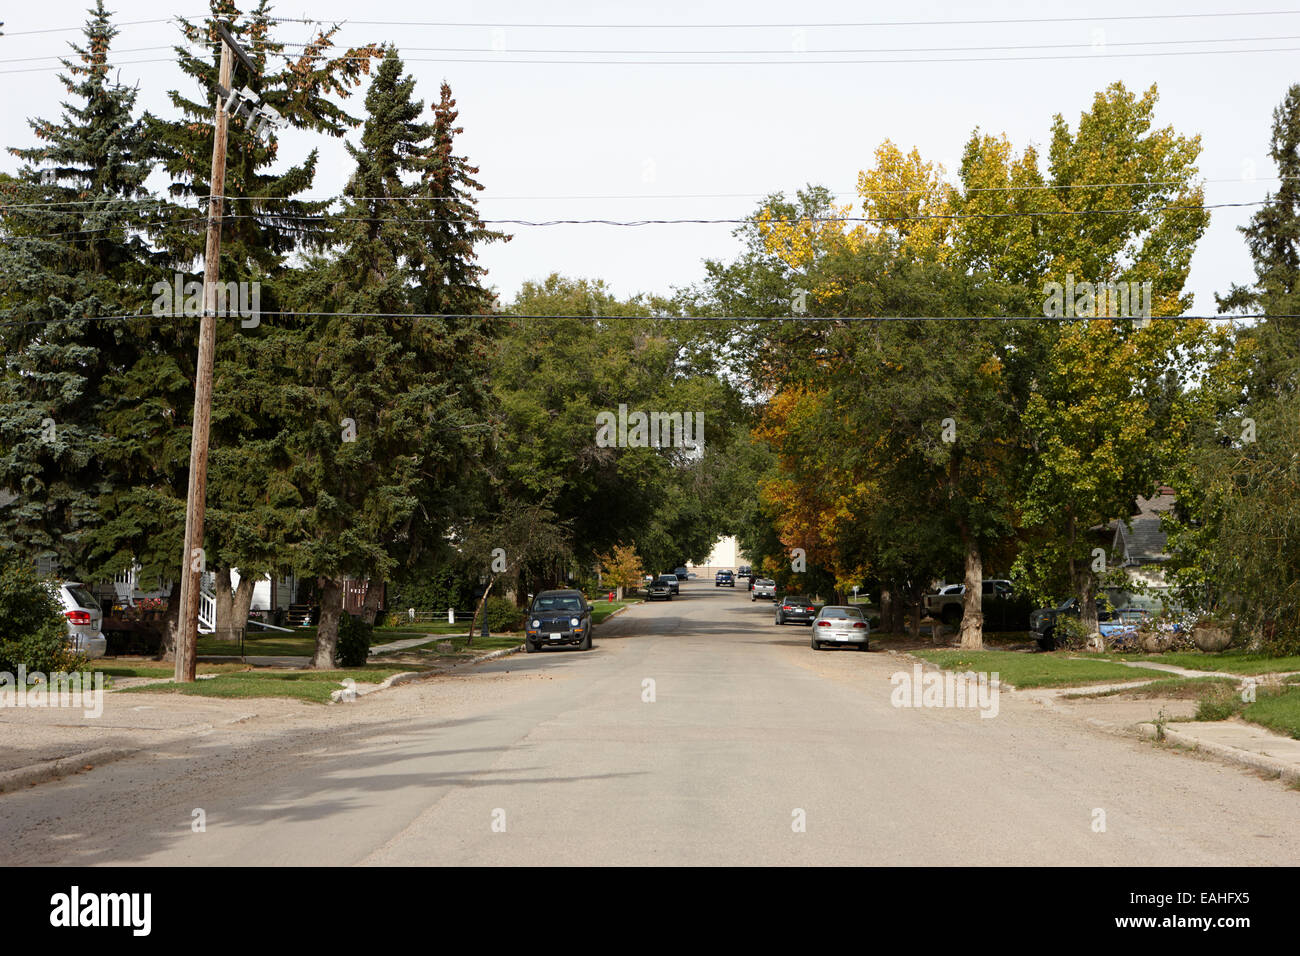 Viale alberato strada di città in città di leader sk Canada Foto Stock